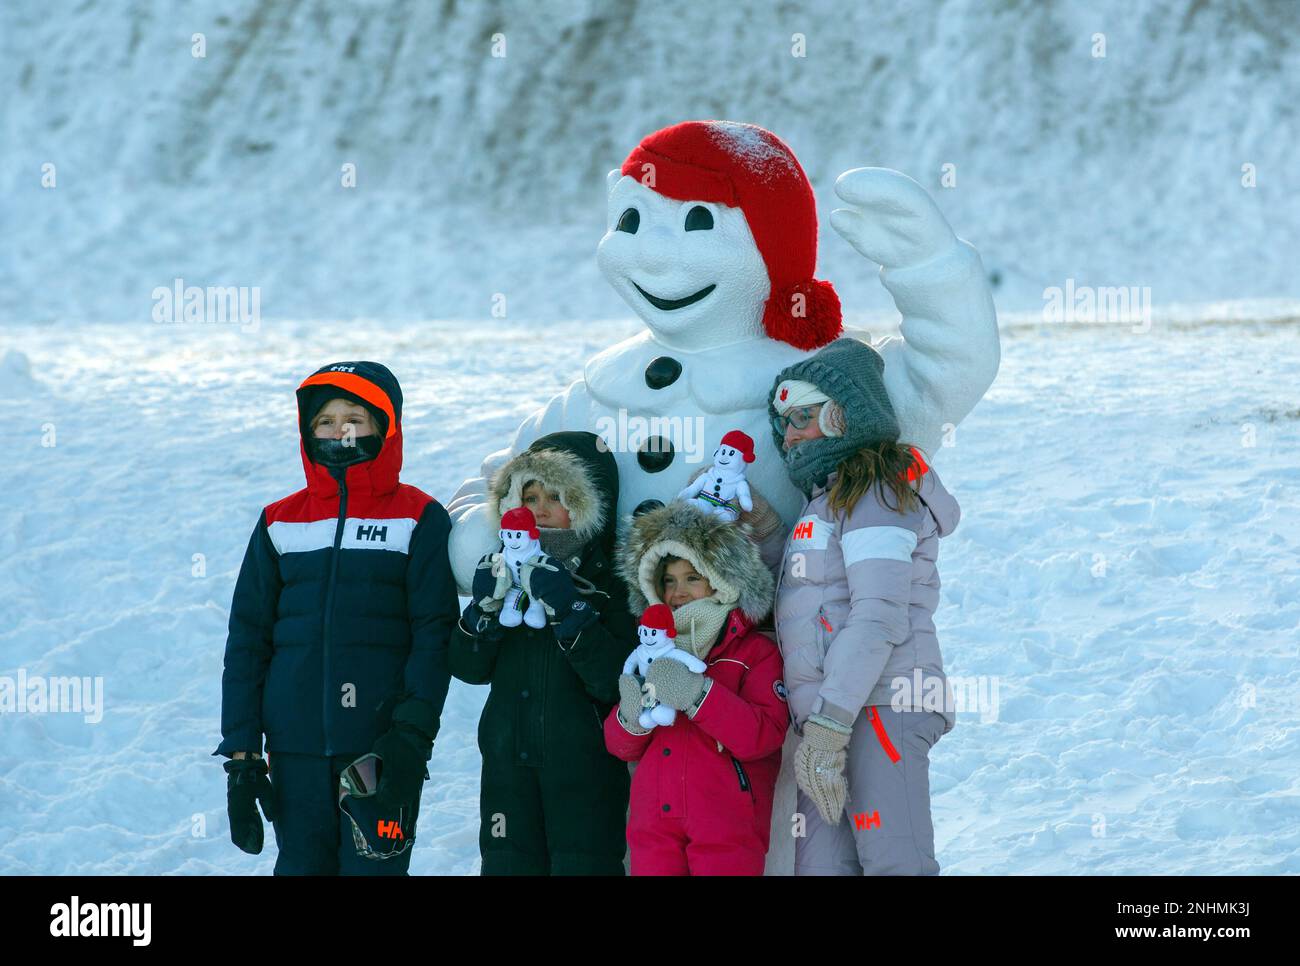 Quebec, Canada : questo è il famoso King of the Quebec Winter Carnival, una mascotte pupazzo di neve amata da tutti e chiamata Bonhomme Carnaval. Foto Stock